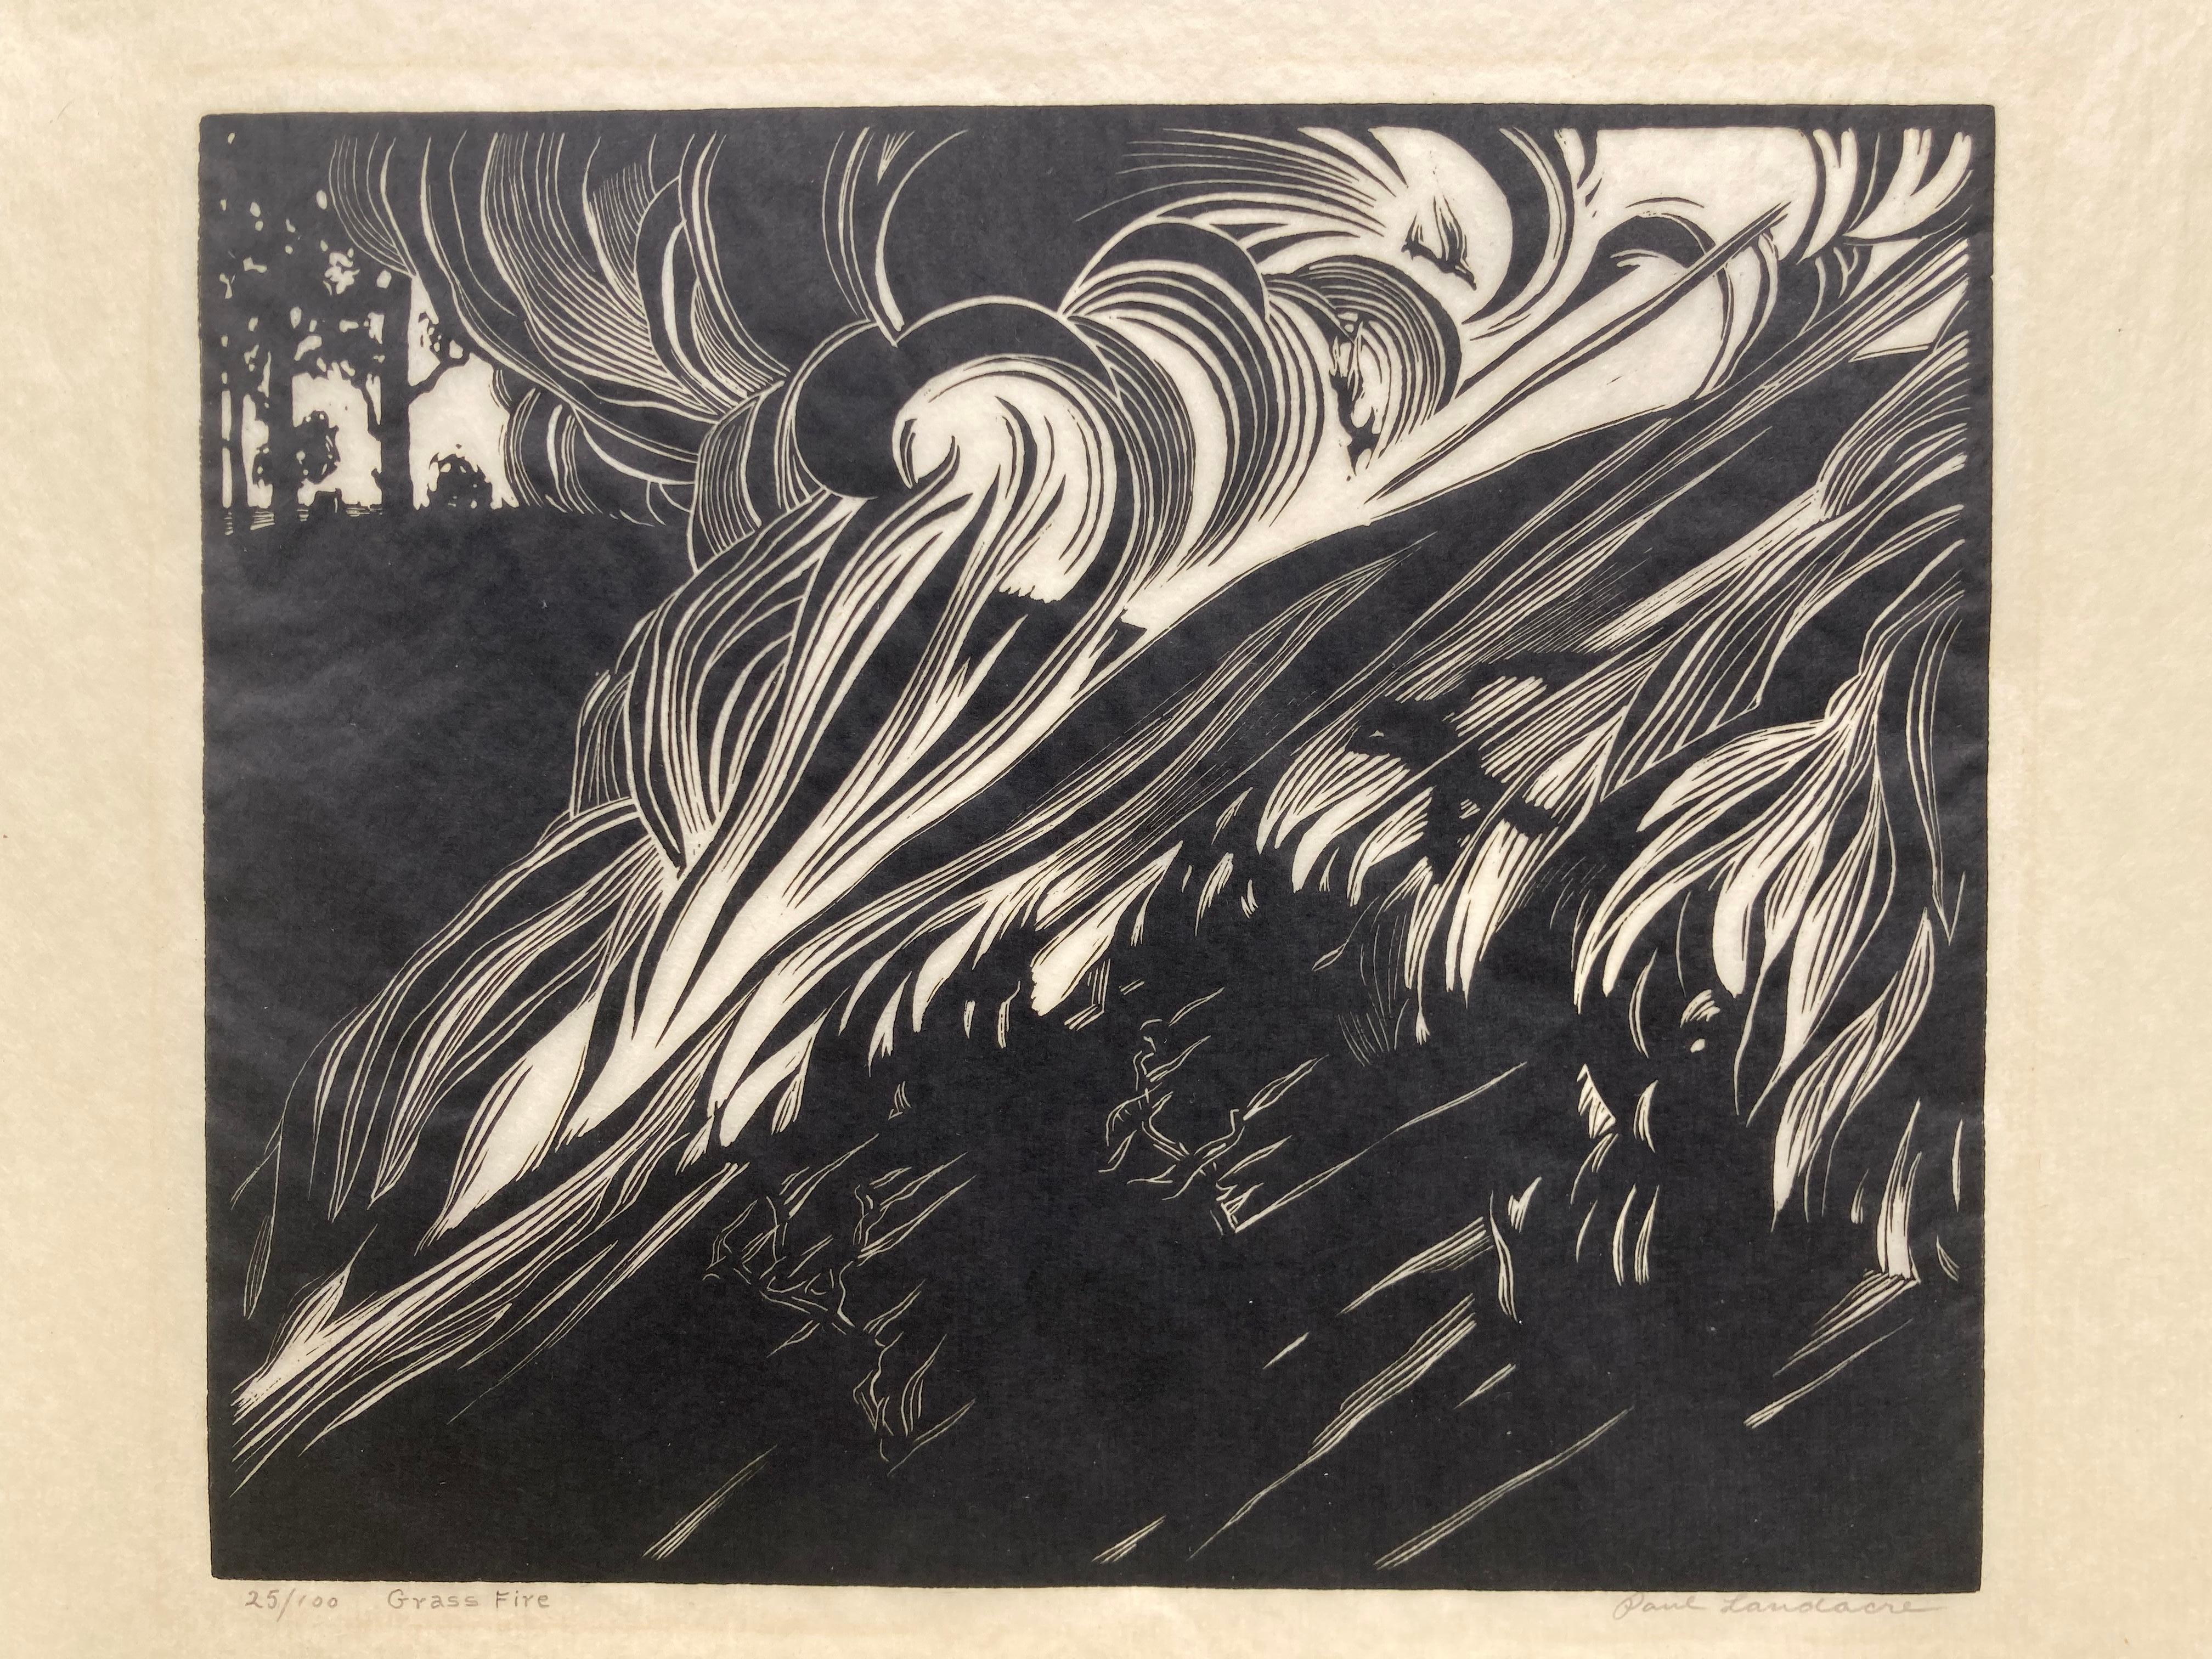 GRASS FIRE. - Impression signée très rare - Print de Paul Landacre